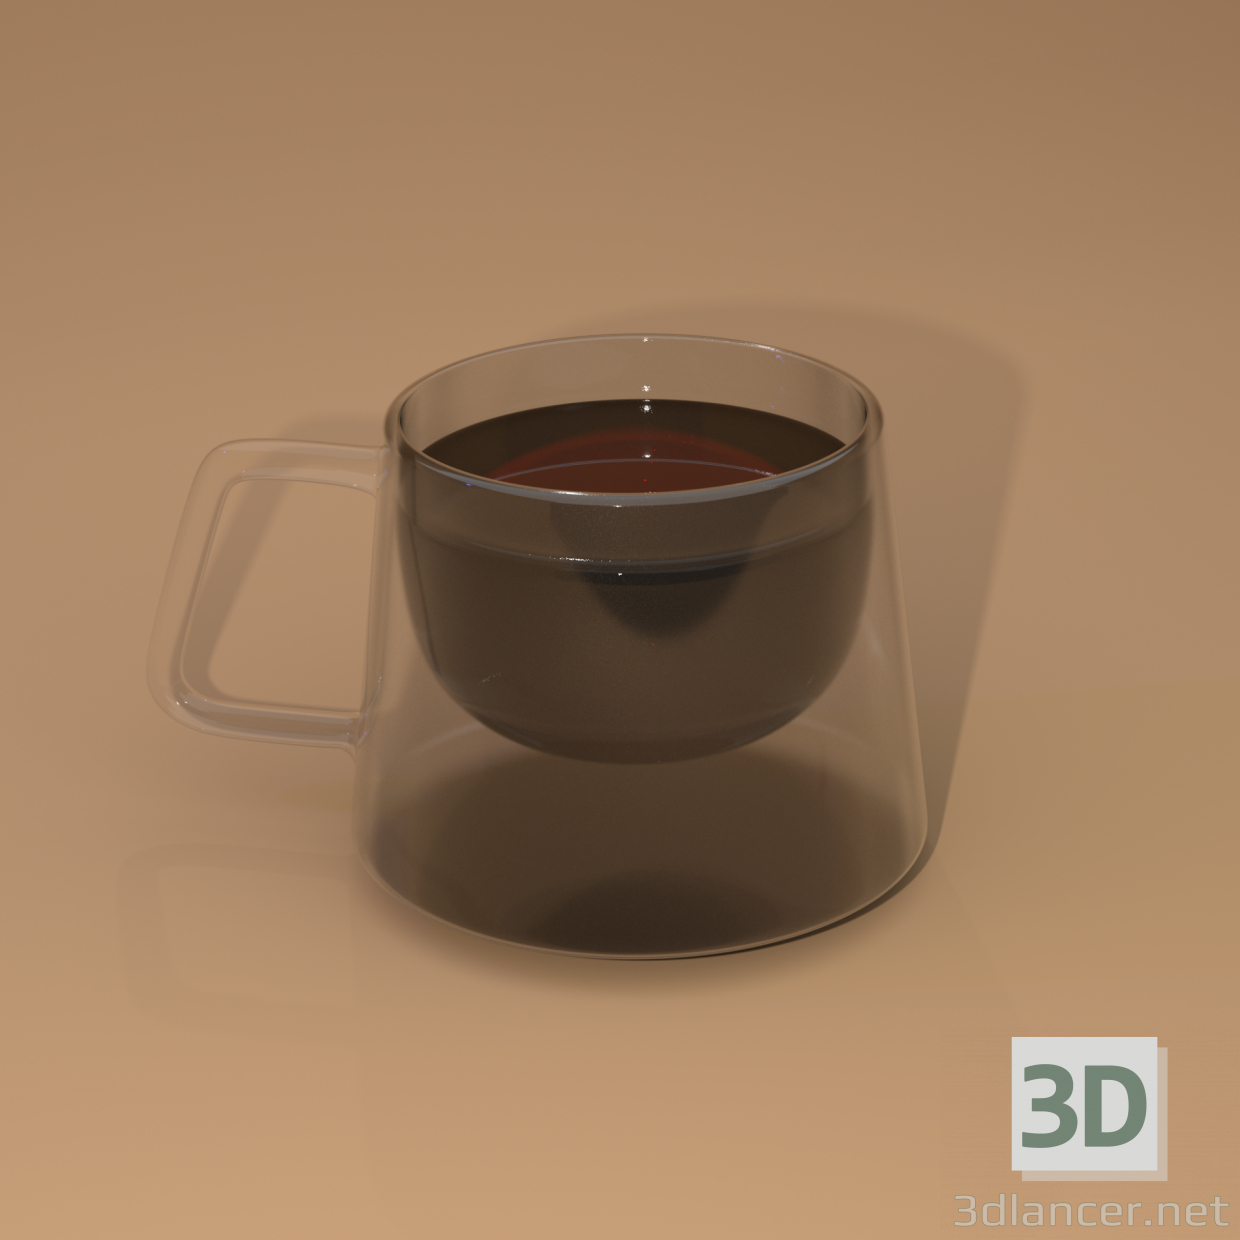 Vaso cuadrado doble vidrio 3D modelo Compro - render